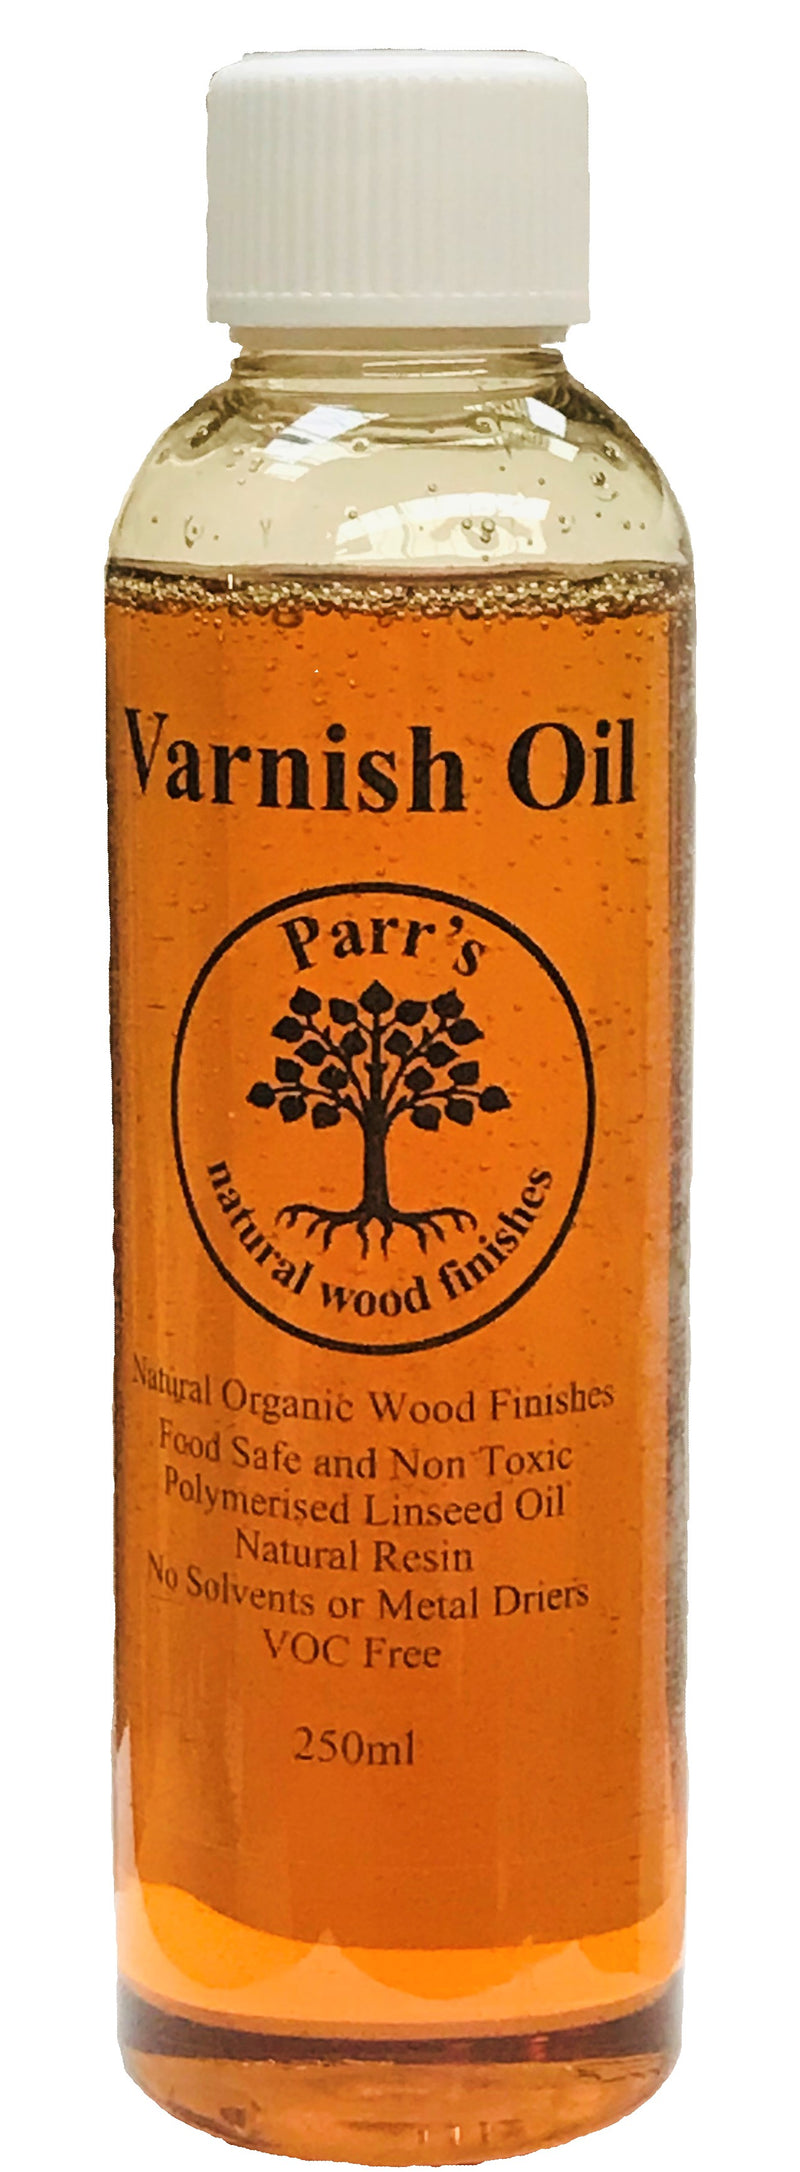 Varnish Oil